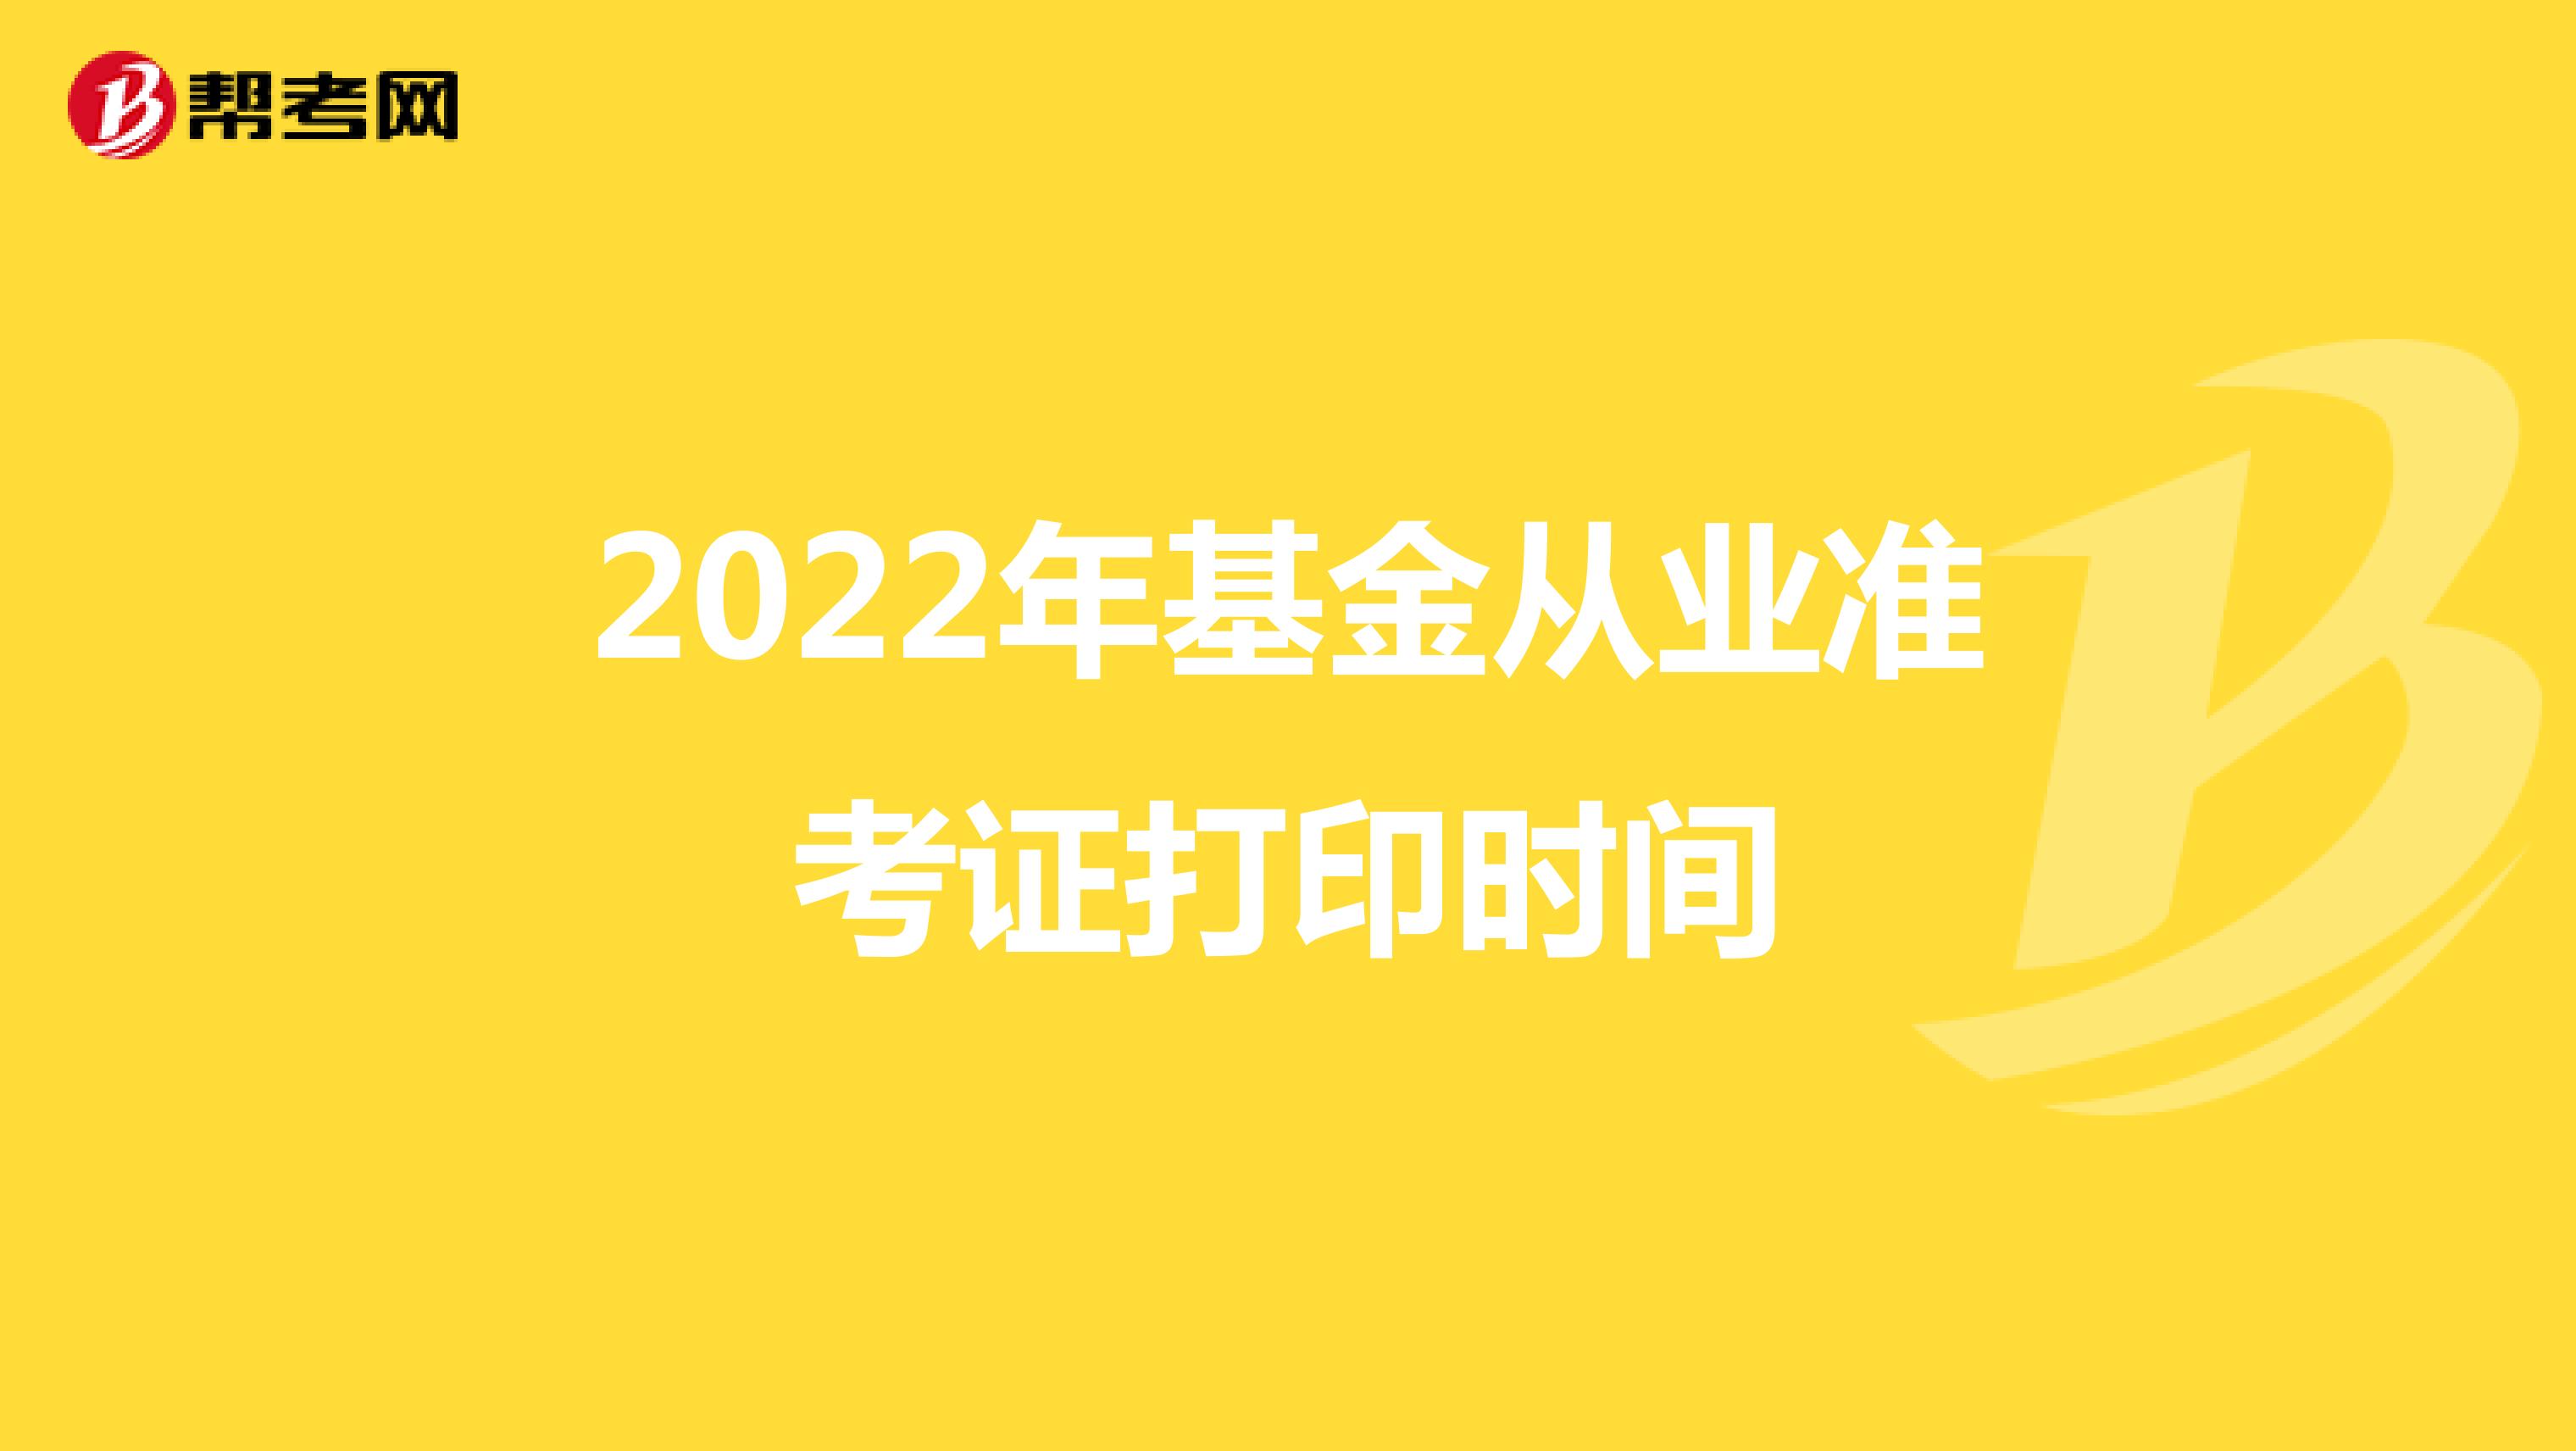 2022年基金从业准考证打印时间